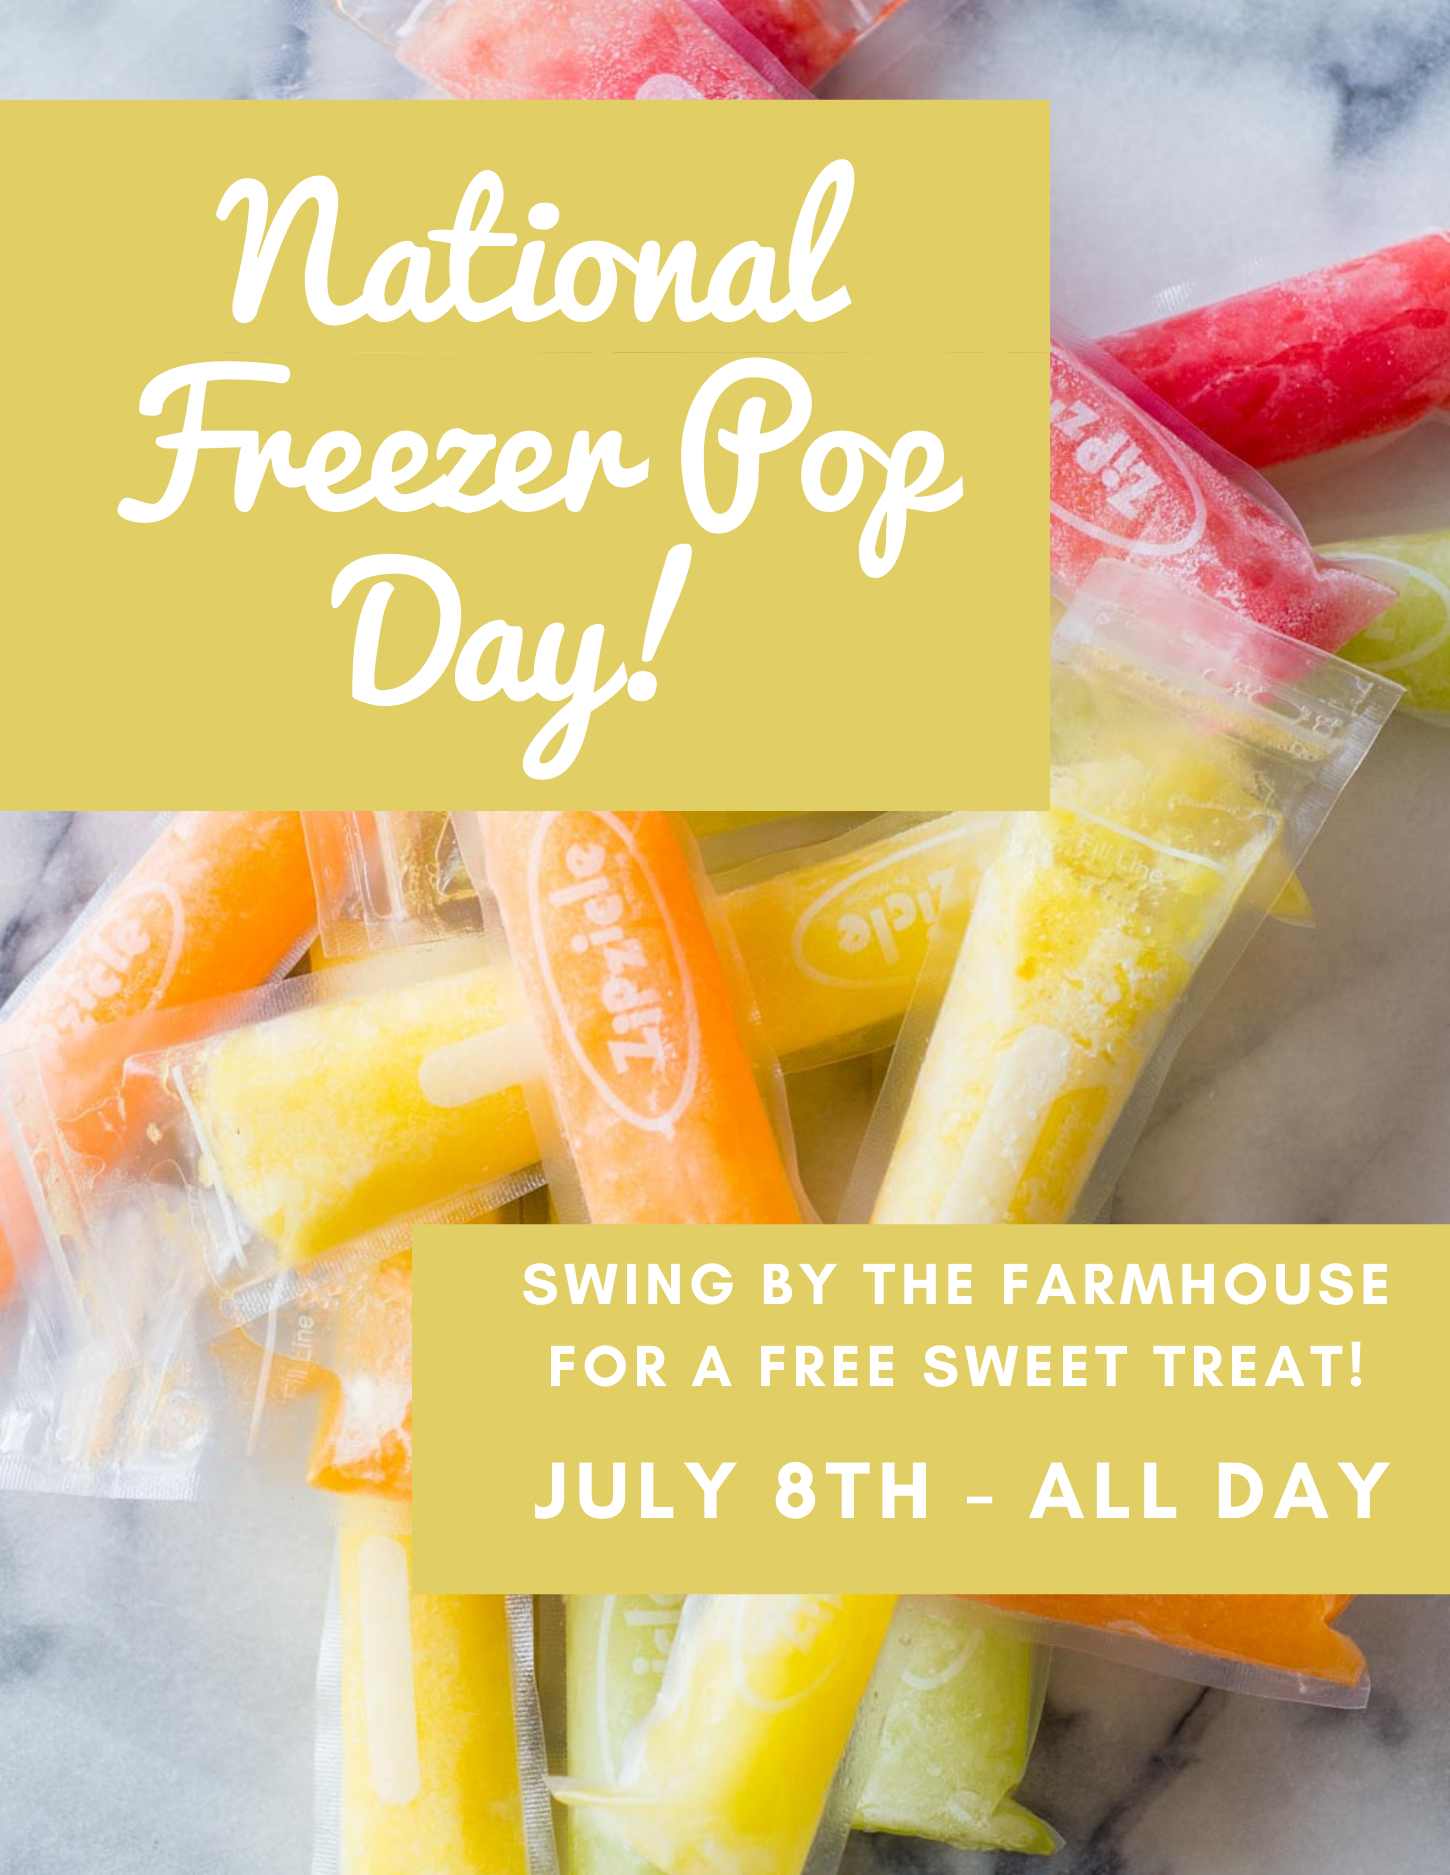 National Freezer Pop Day